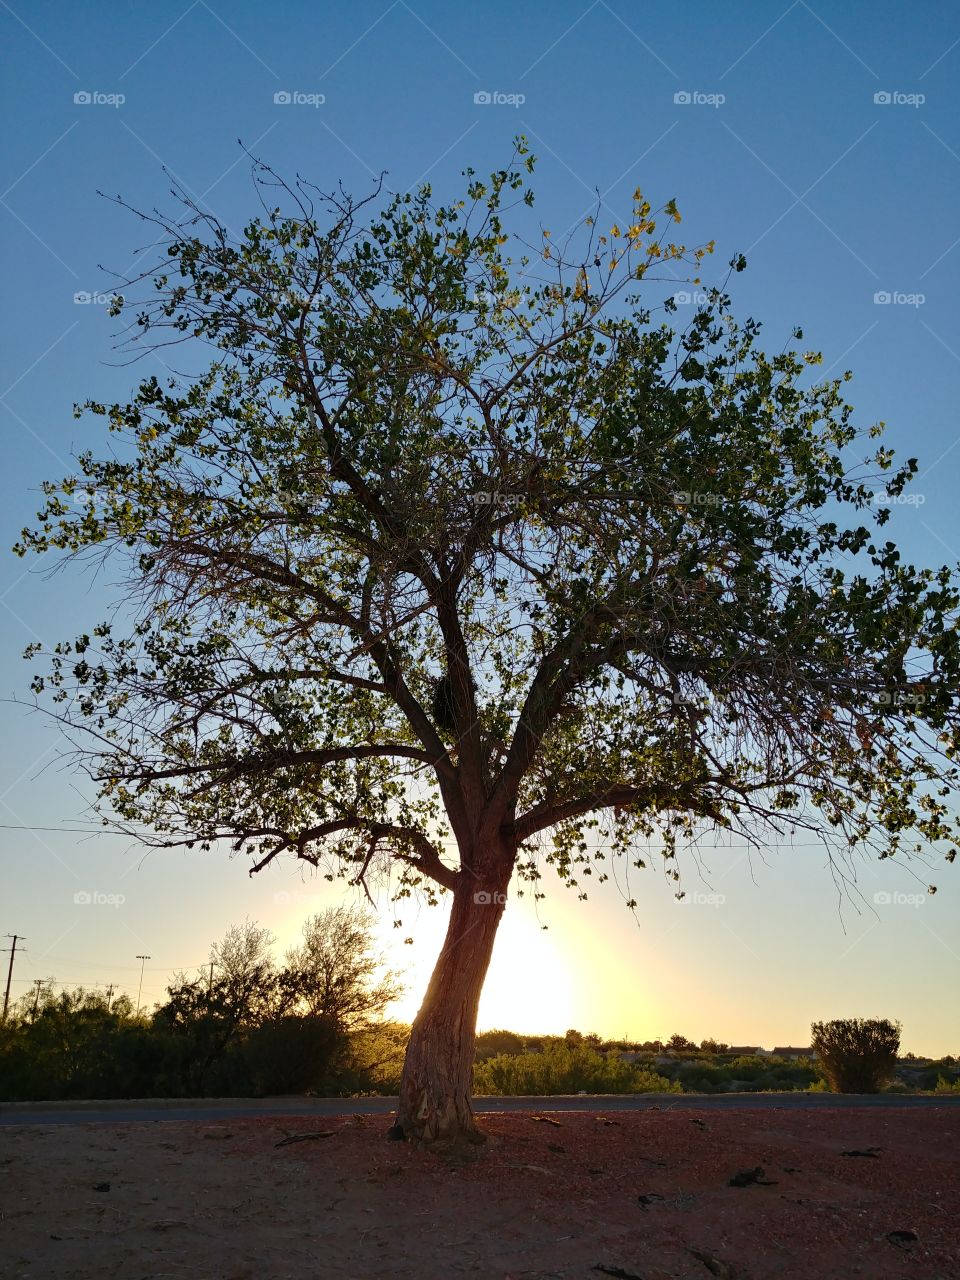 tree in setting sun